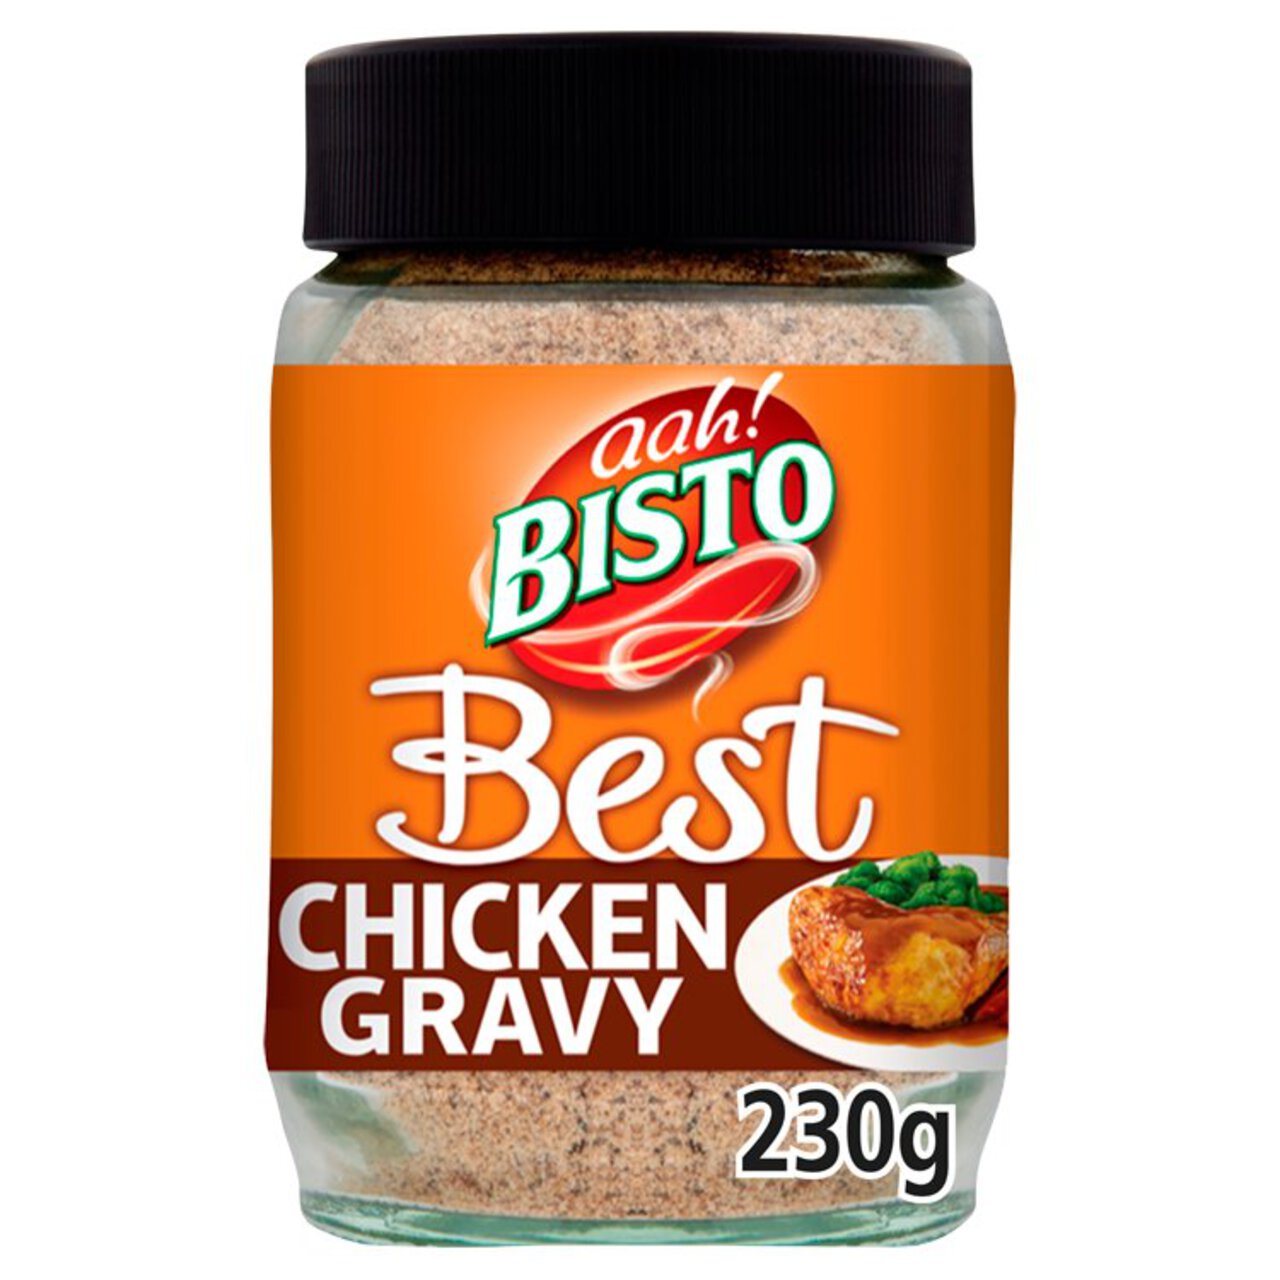 Bisto Best Chicken Gravy 230g